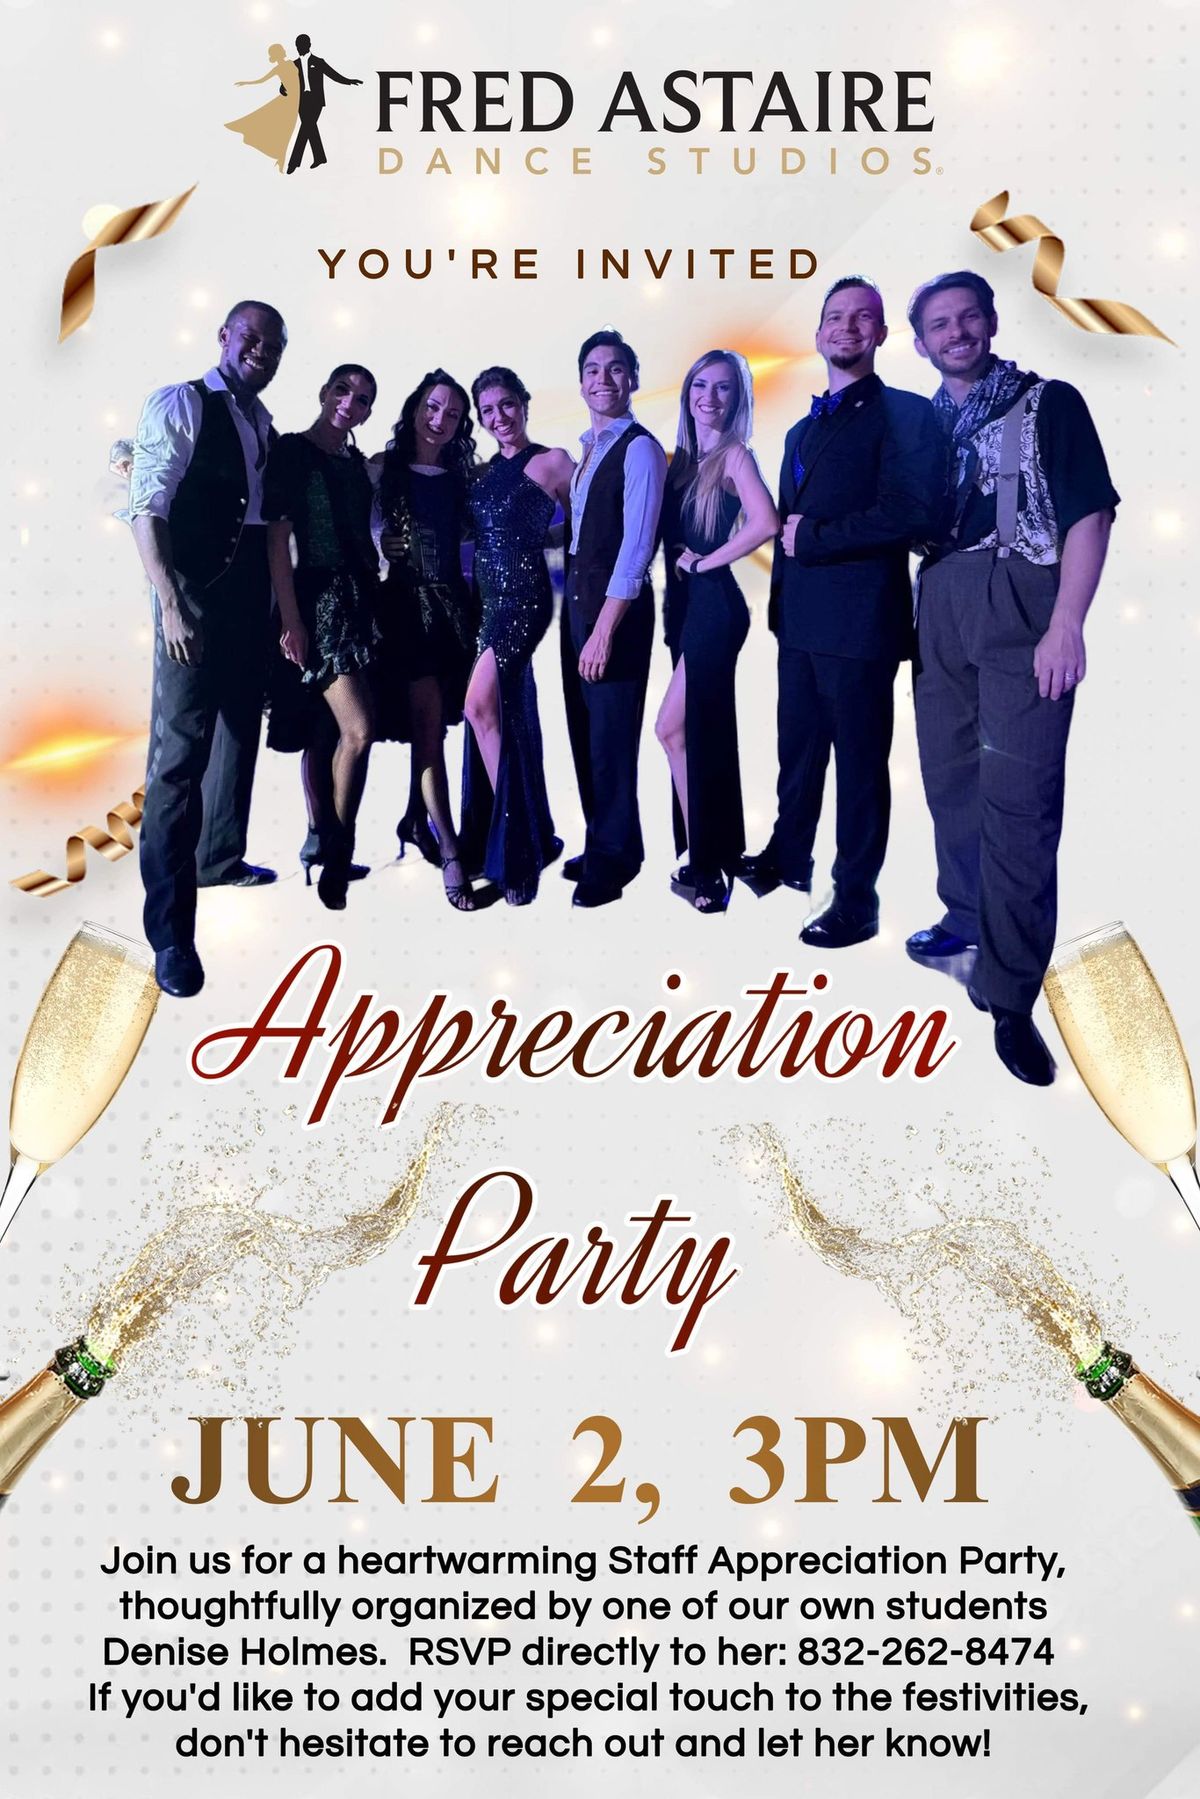 Appreciation Staff Party